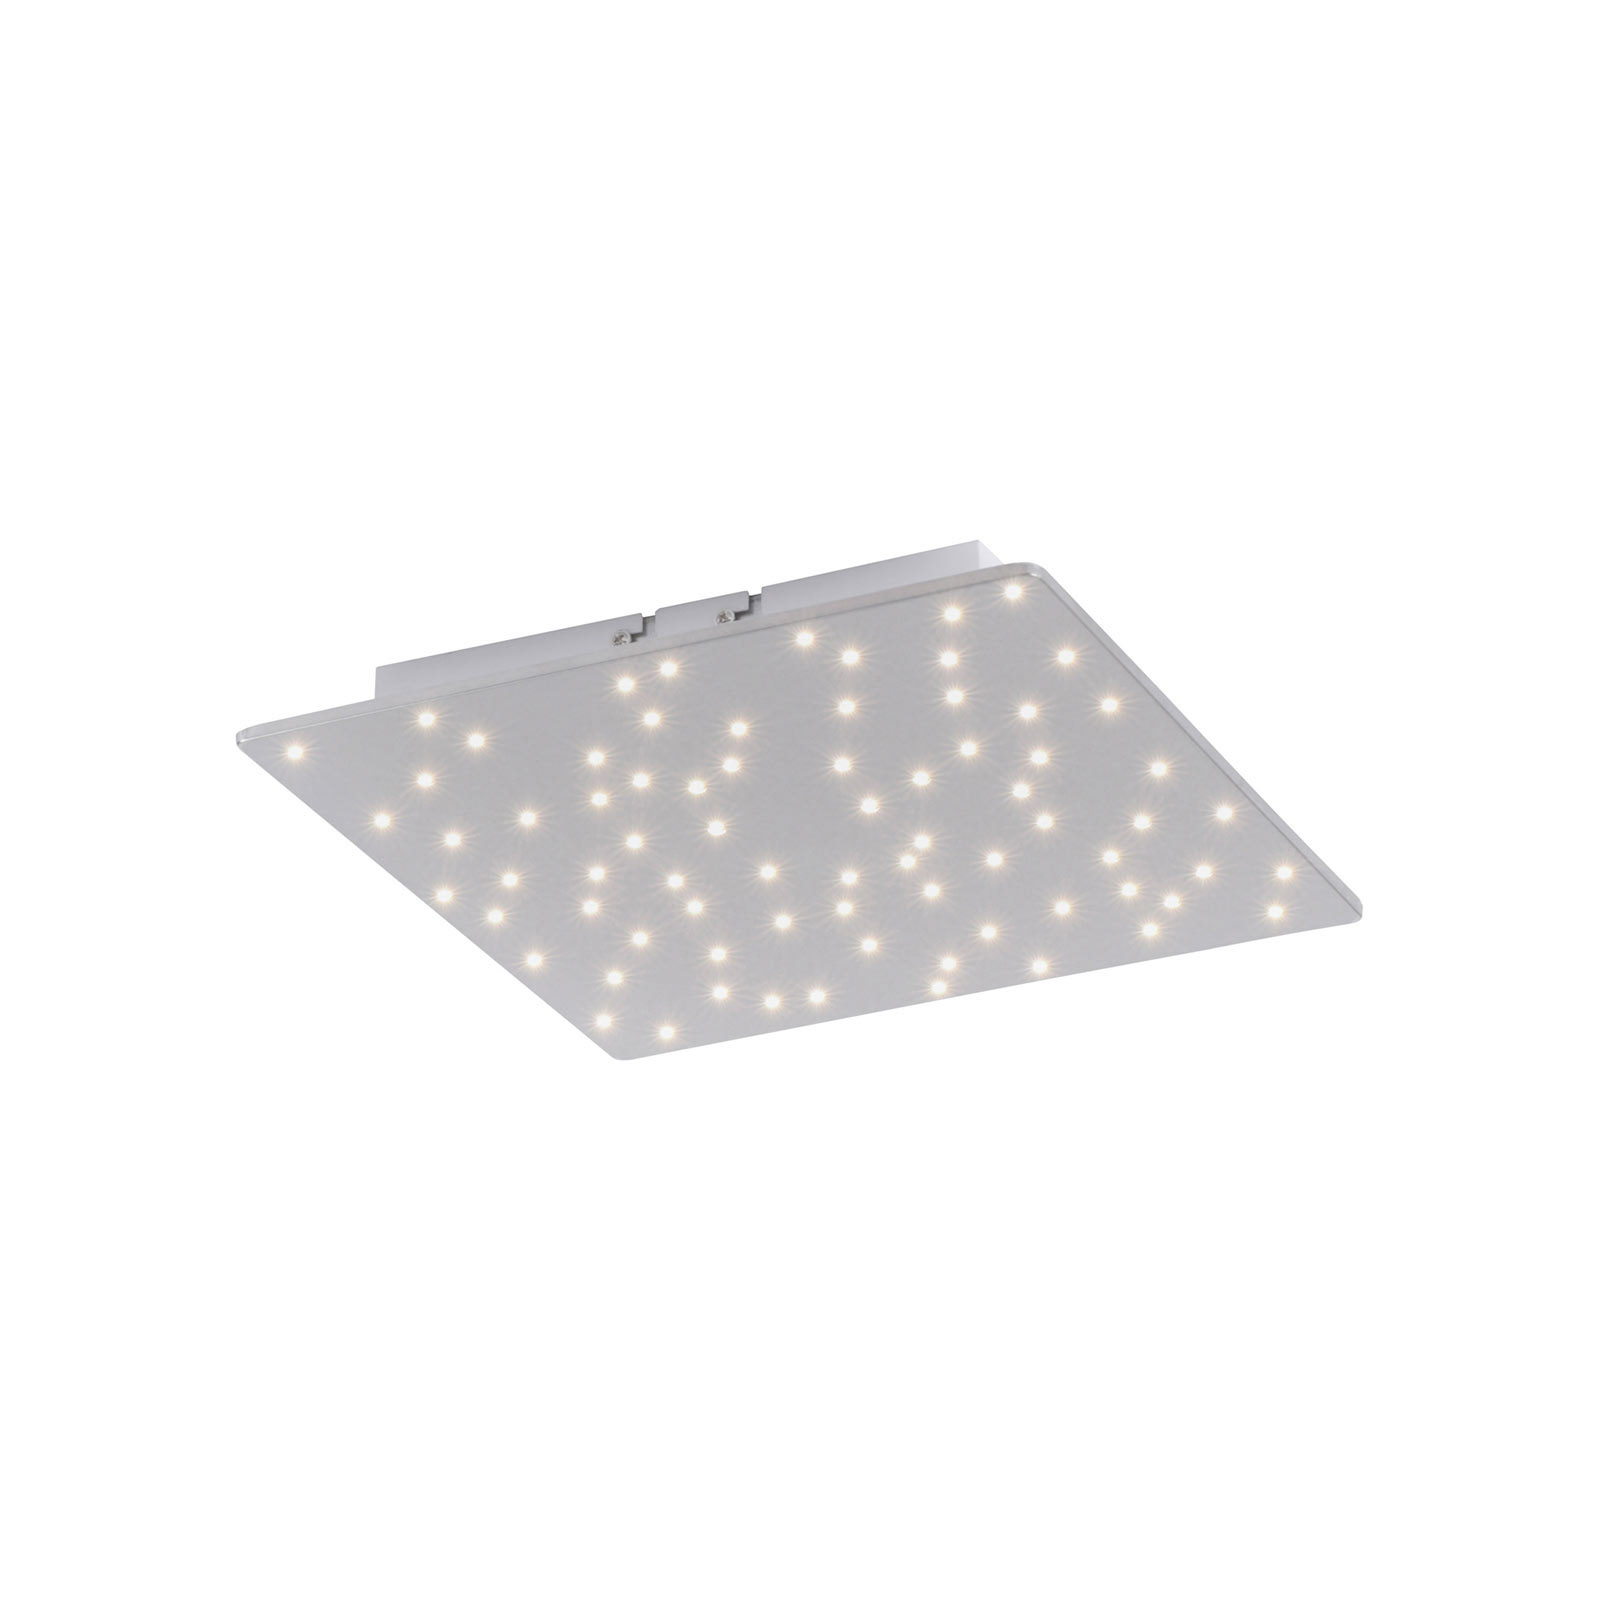 Plafón LED Sparkle, tunable white, 30x30 cm